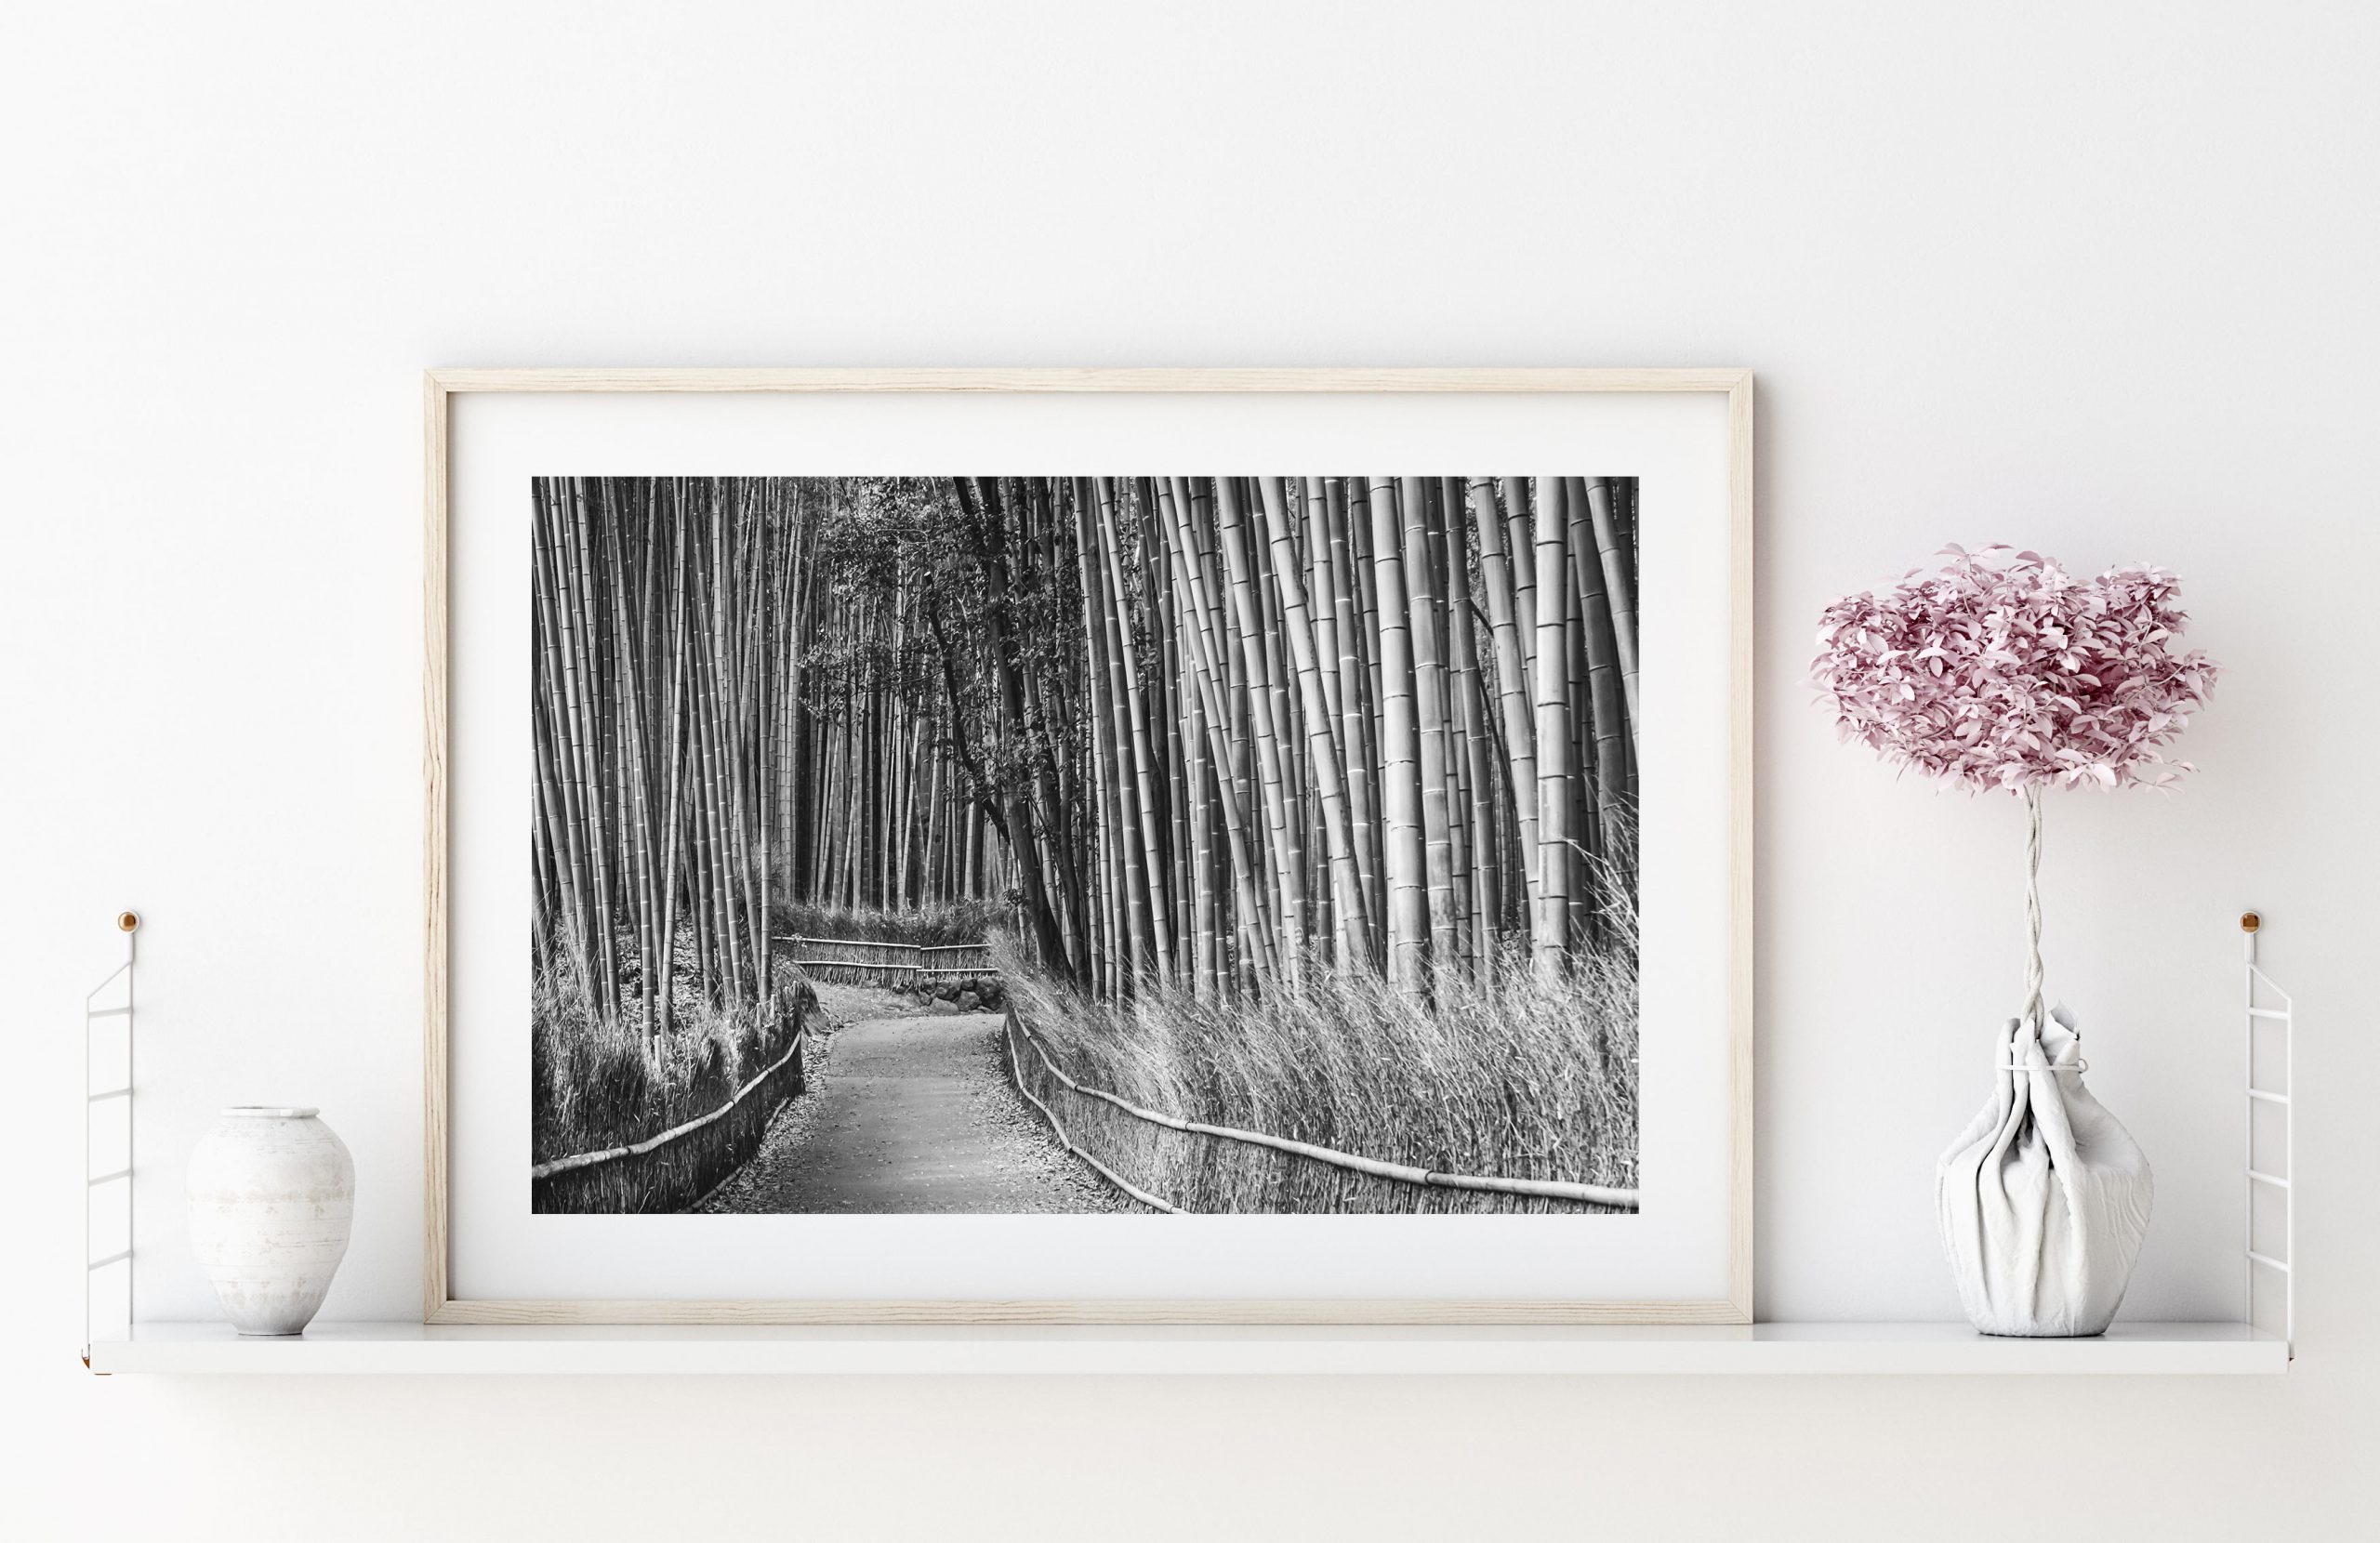 Arashiyama Bamboo Forest, Kyoto, Japan, Black and White – Canvas